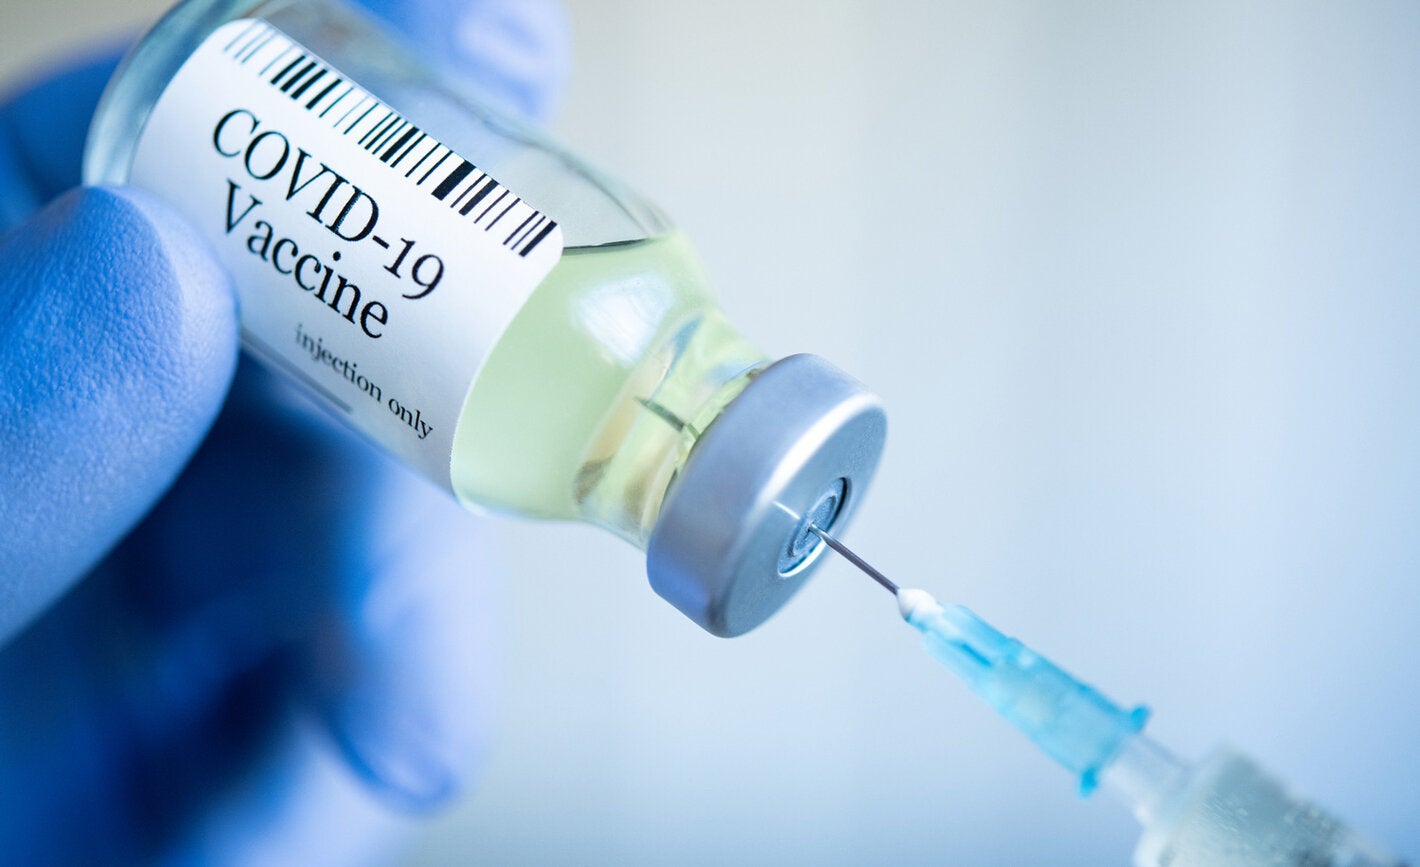 Esta semana, México recibirá 1.9 millones de vacunas envasadas contra COVID-19